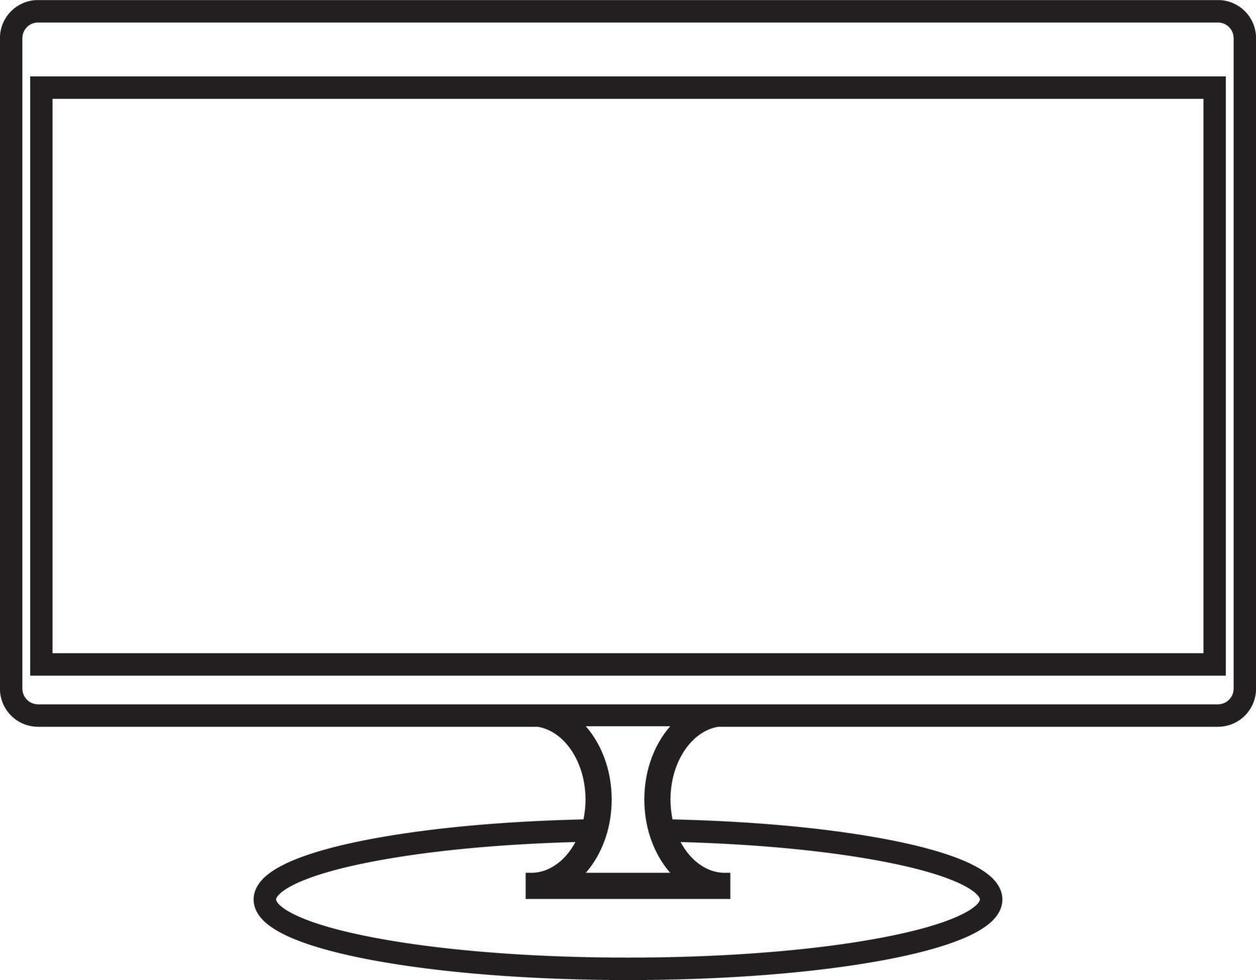 ordinateur ou la télé bureau écran moniteur, numérique électronique avec noir et blanc visuels vecteur